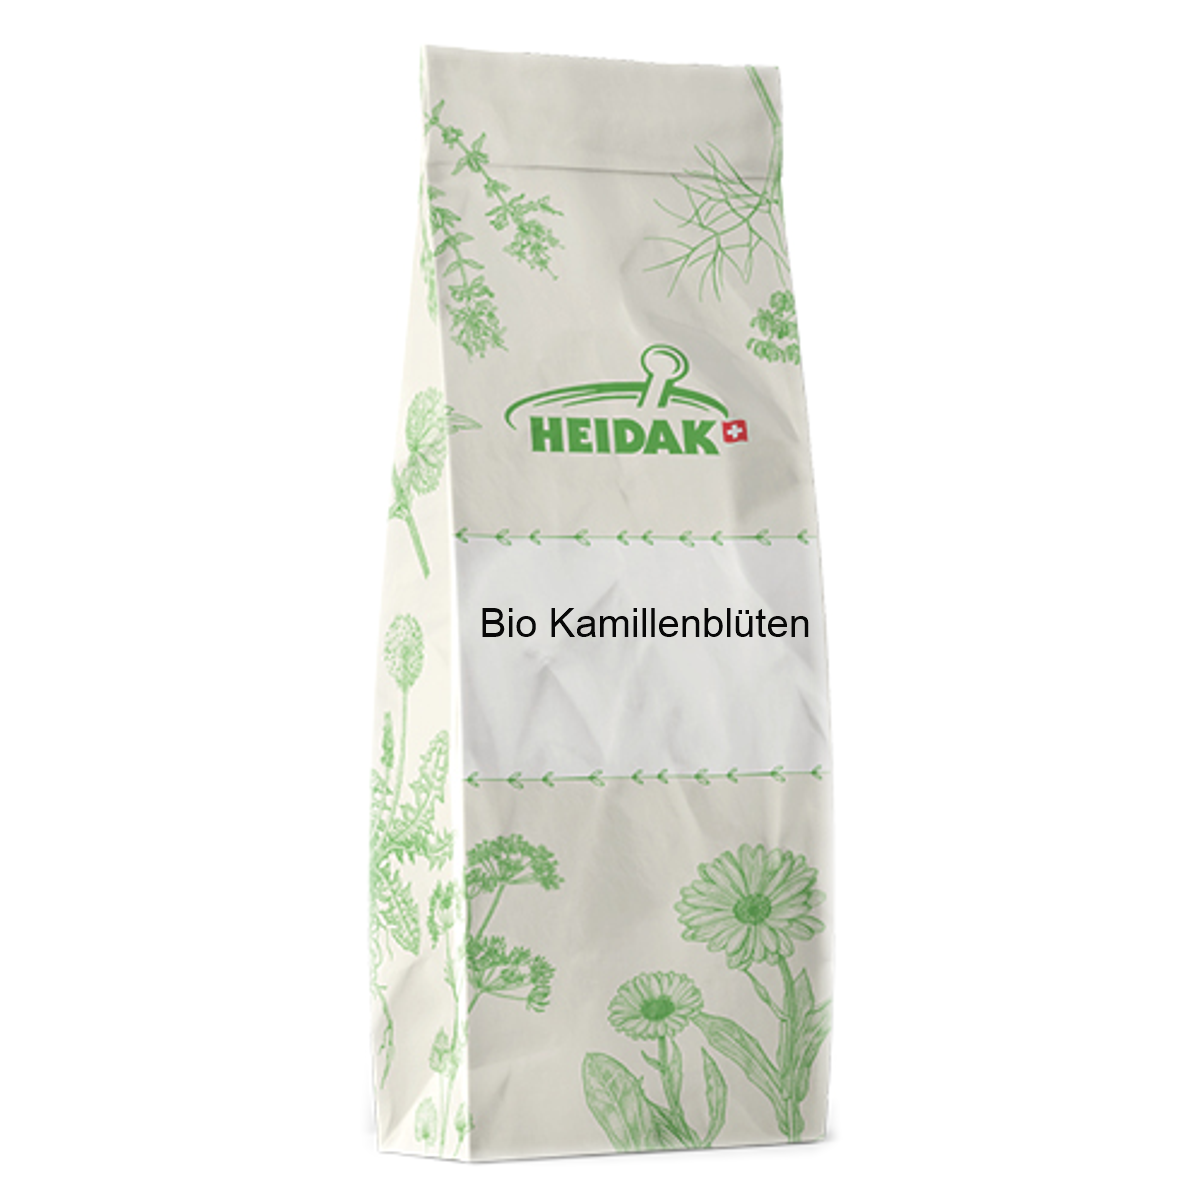 Heidak_Bio_Kamillenblueten_online_kaufen